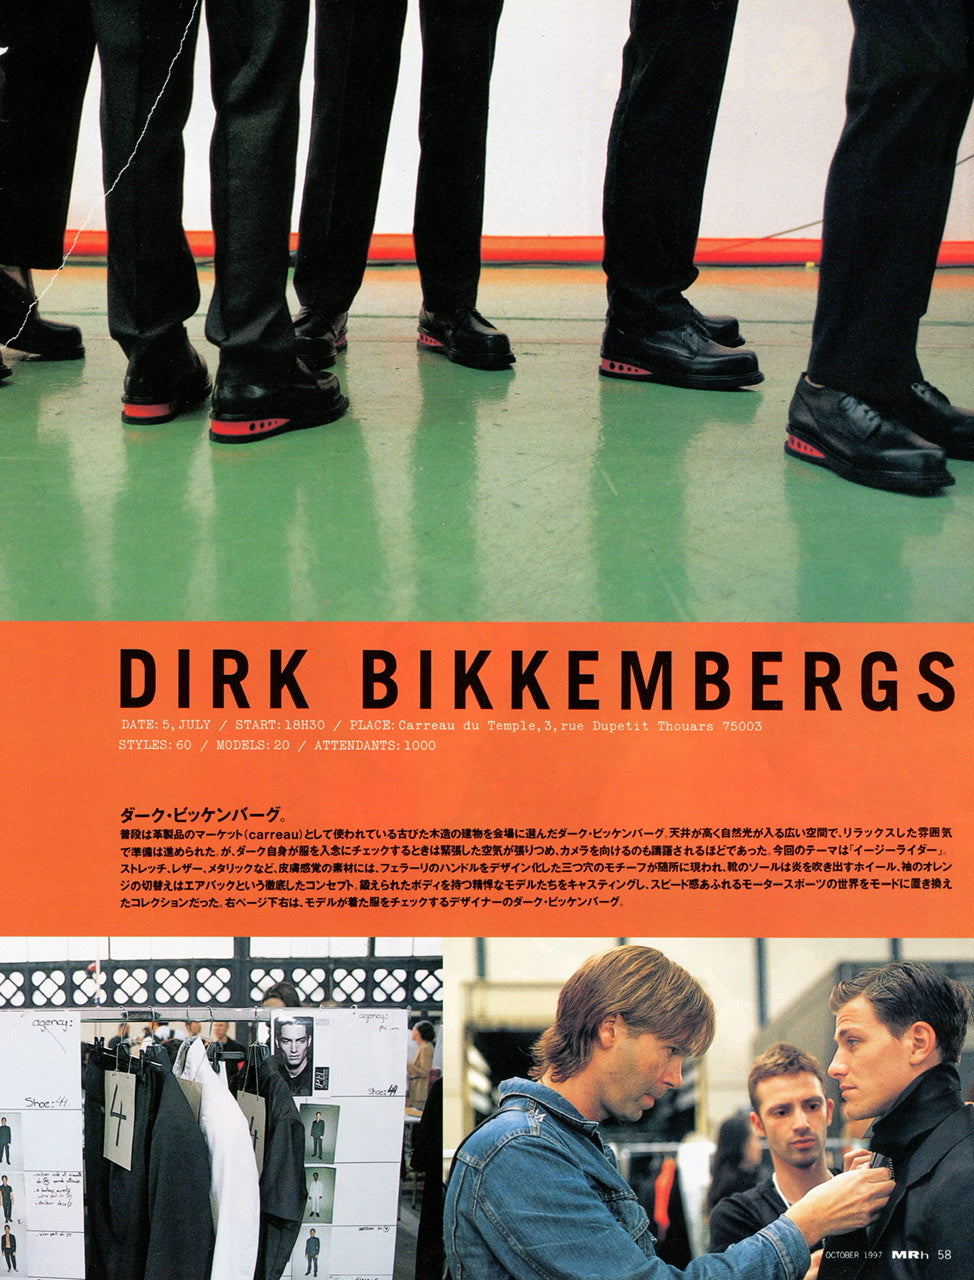 Dirk Bikkembergs Intwerview behind the scenes of the 1997 runway